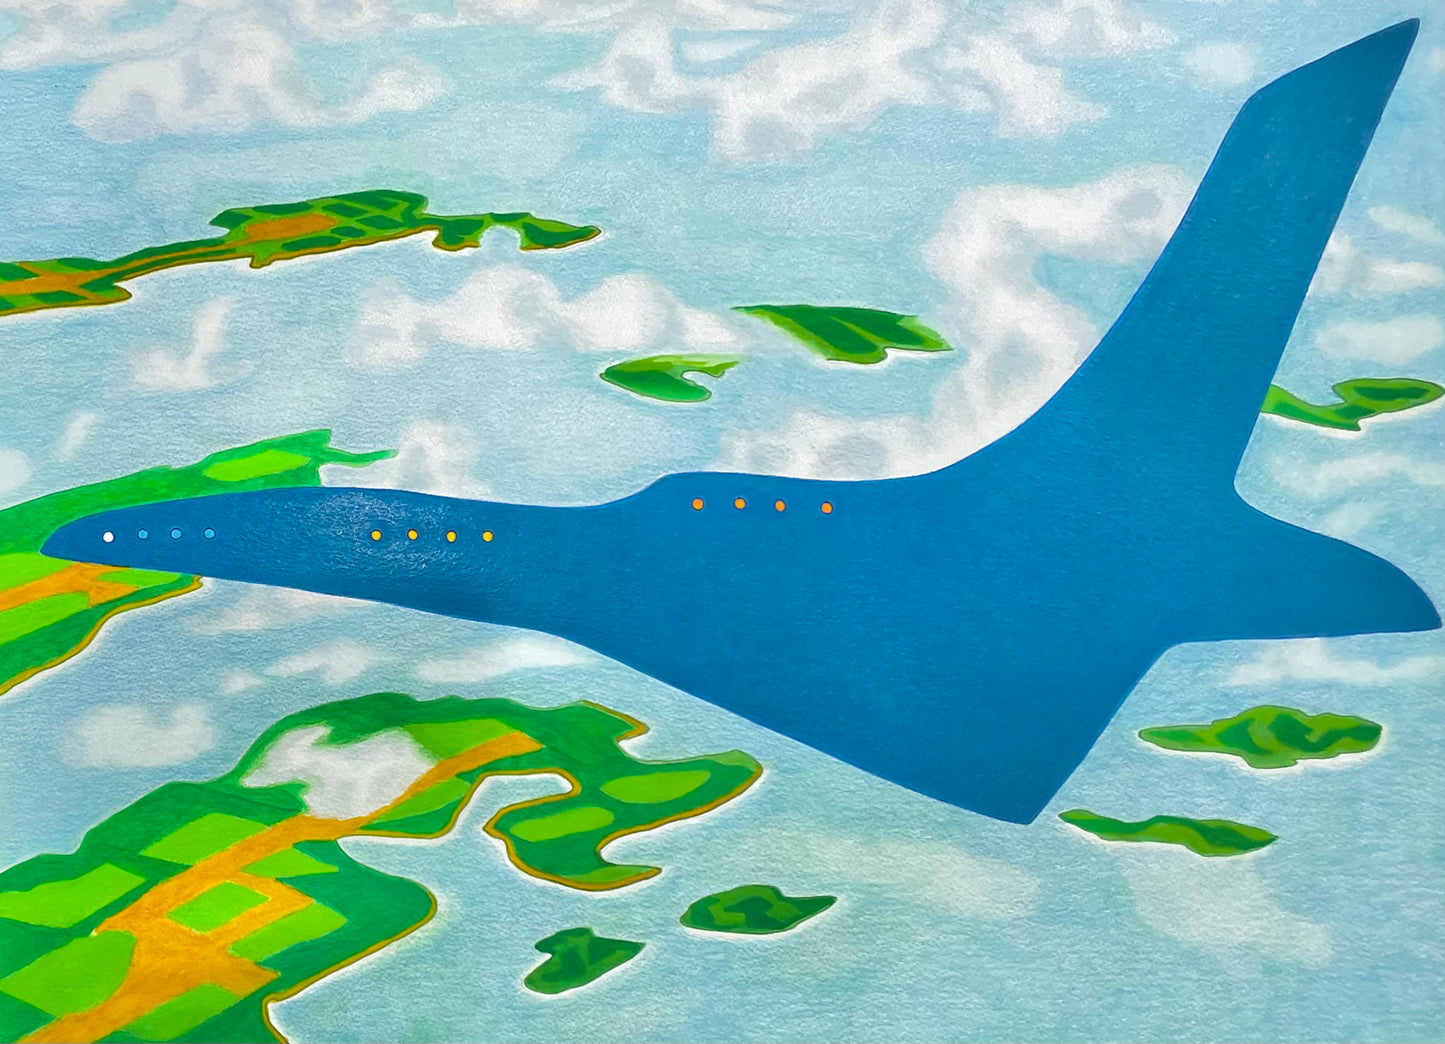 Impresión especial del avión azul de Kevin J Harper